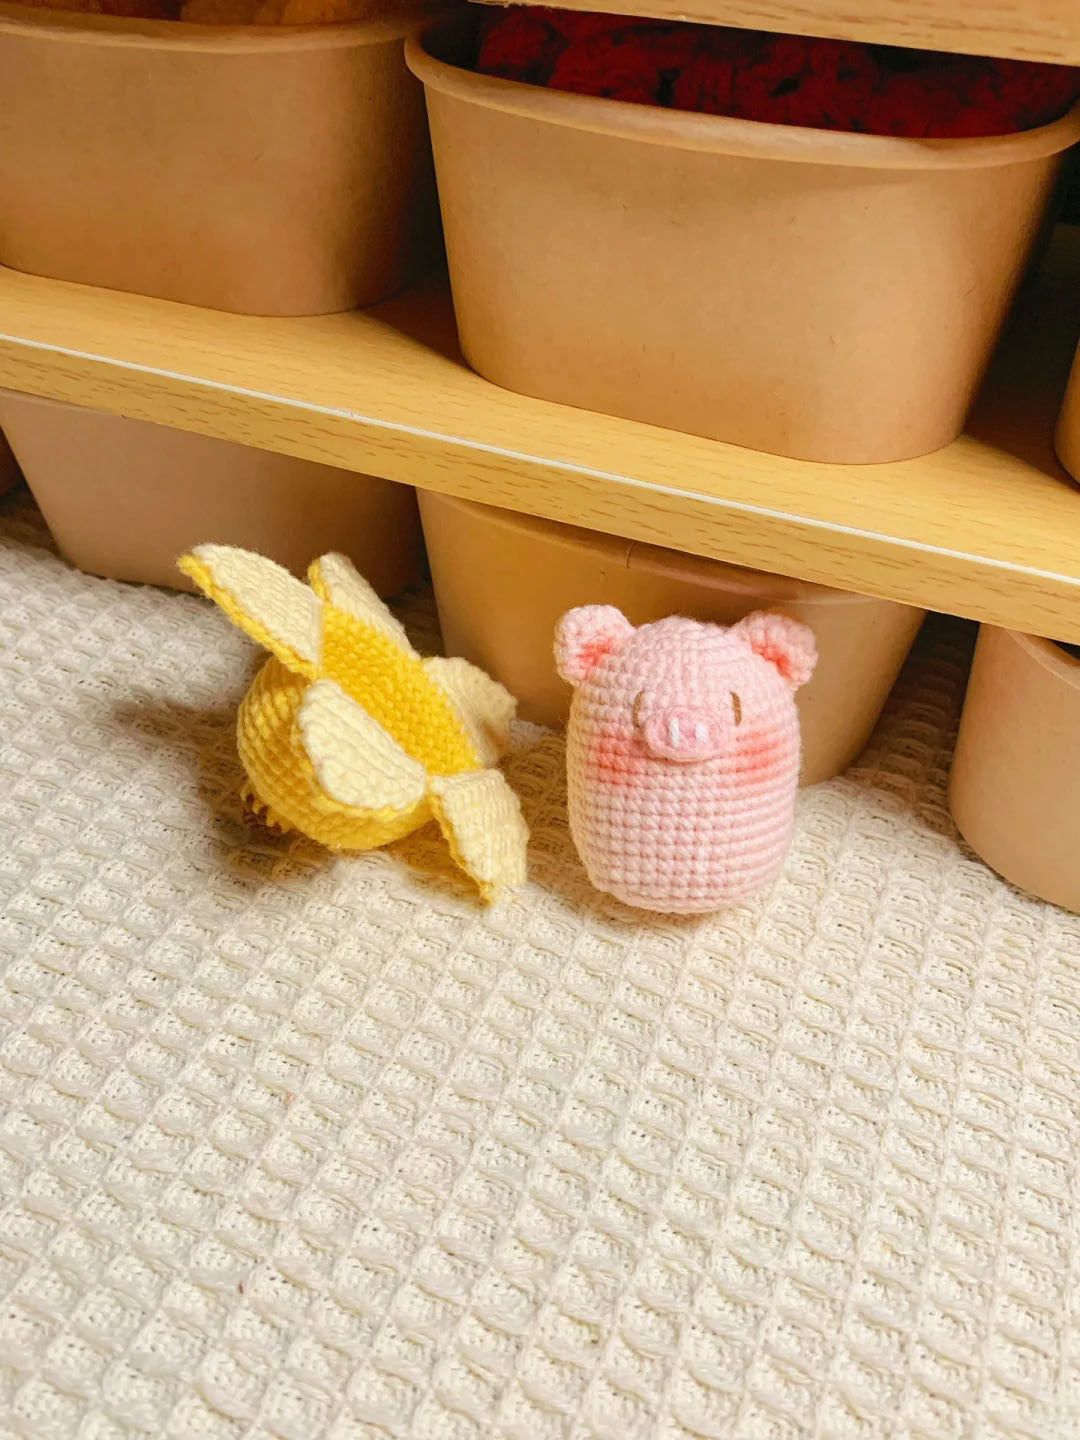 Banana Monkey & Pig 2-in-1 Crochet Pattern (Low Sew)